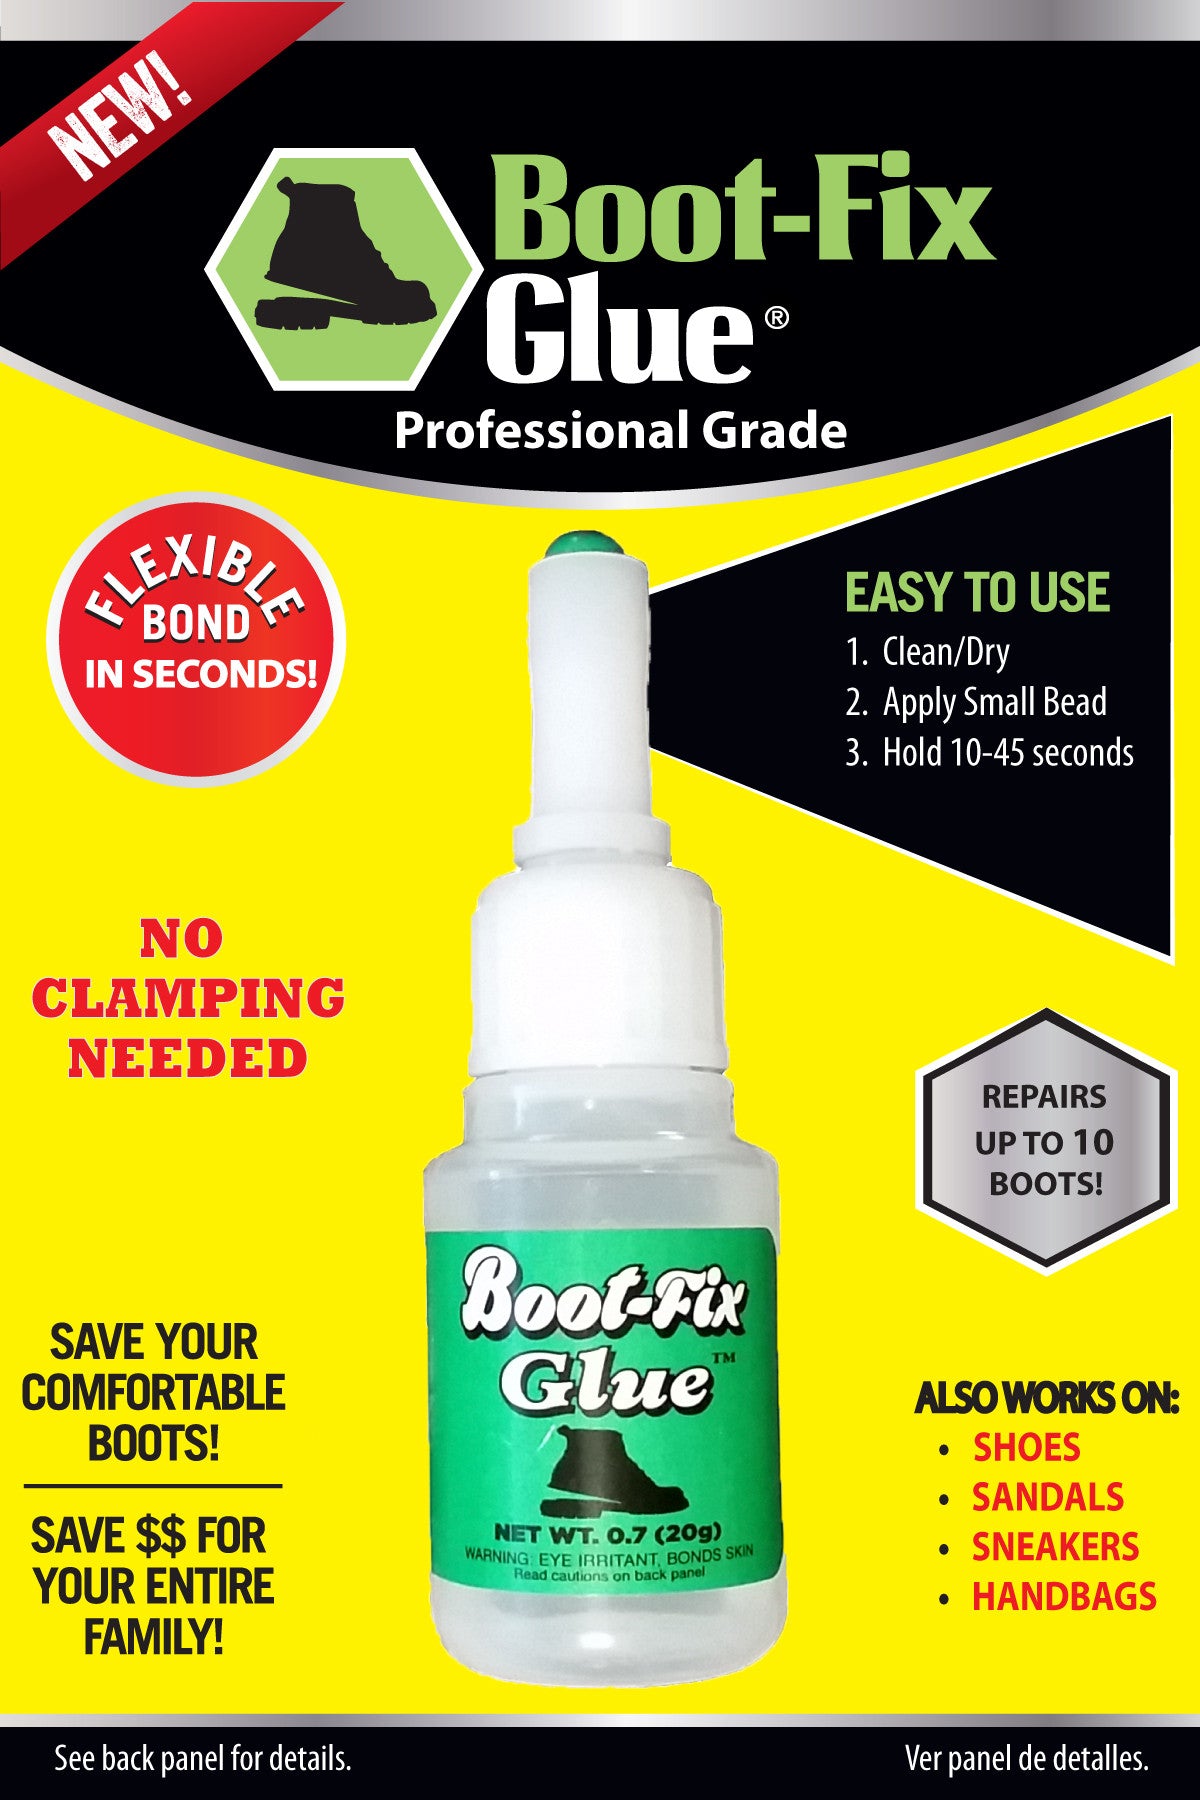 Boot-Fix Shoe Glue